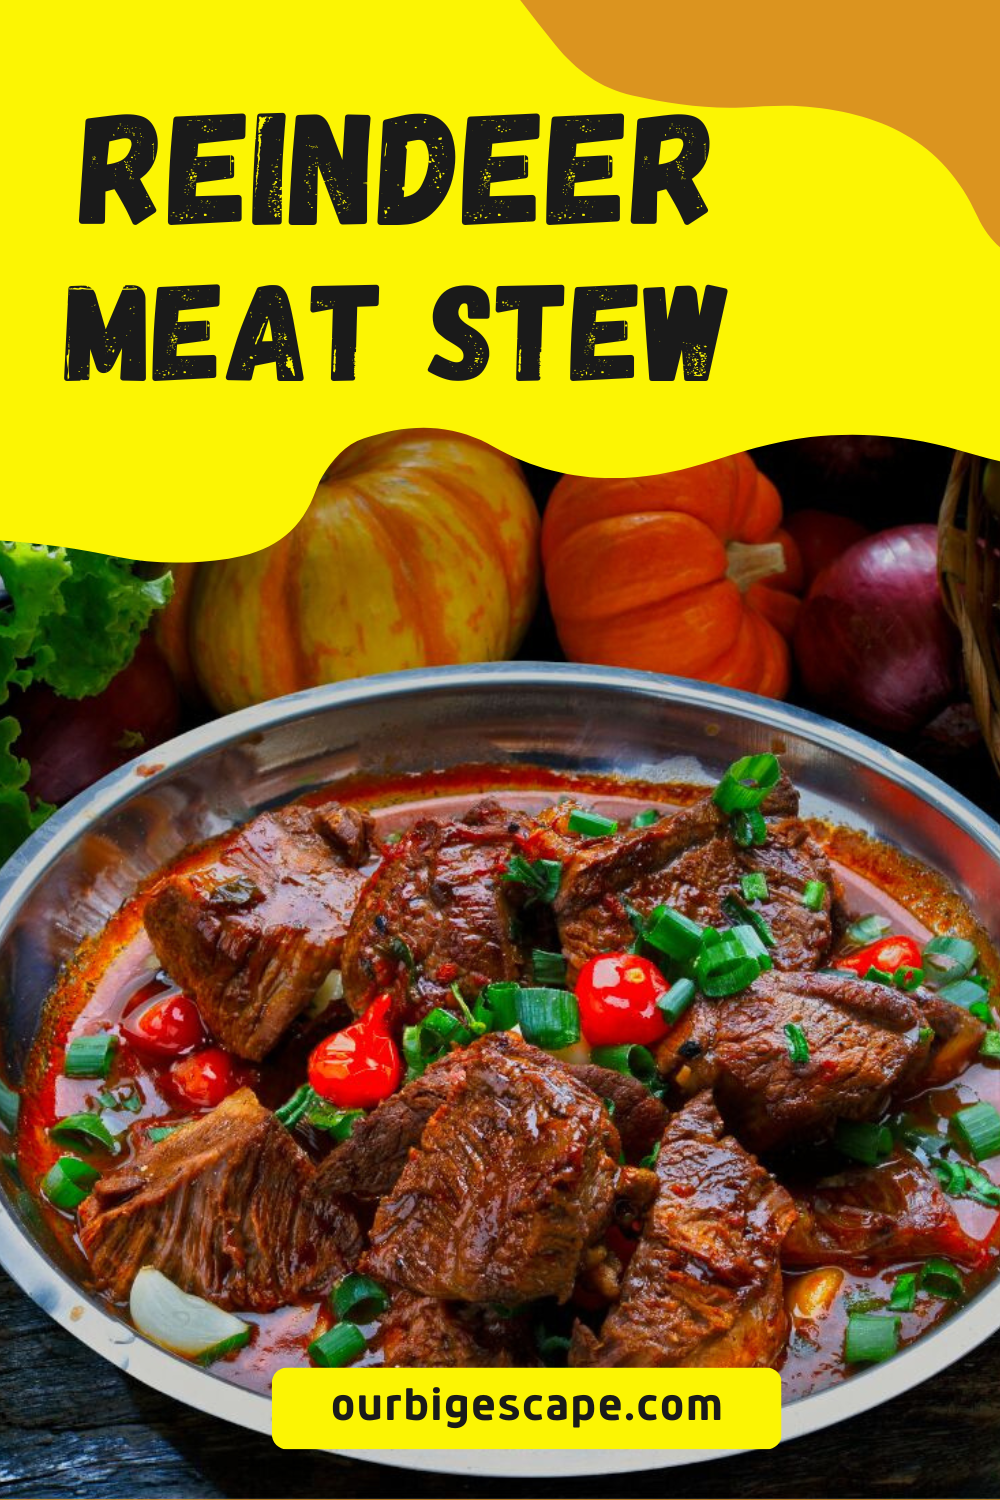 Reindeer Meat Stew